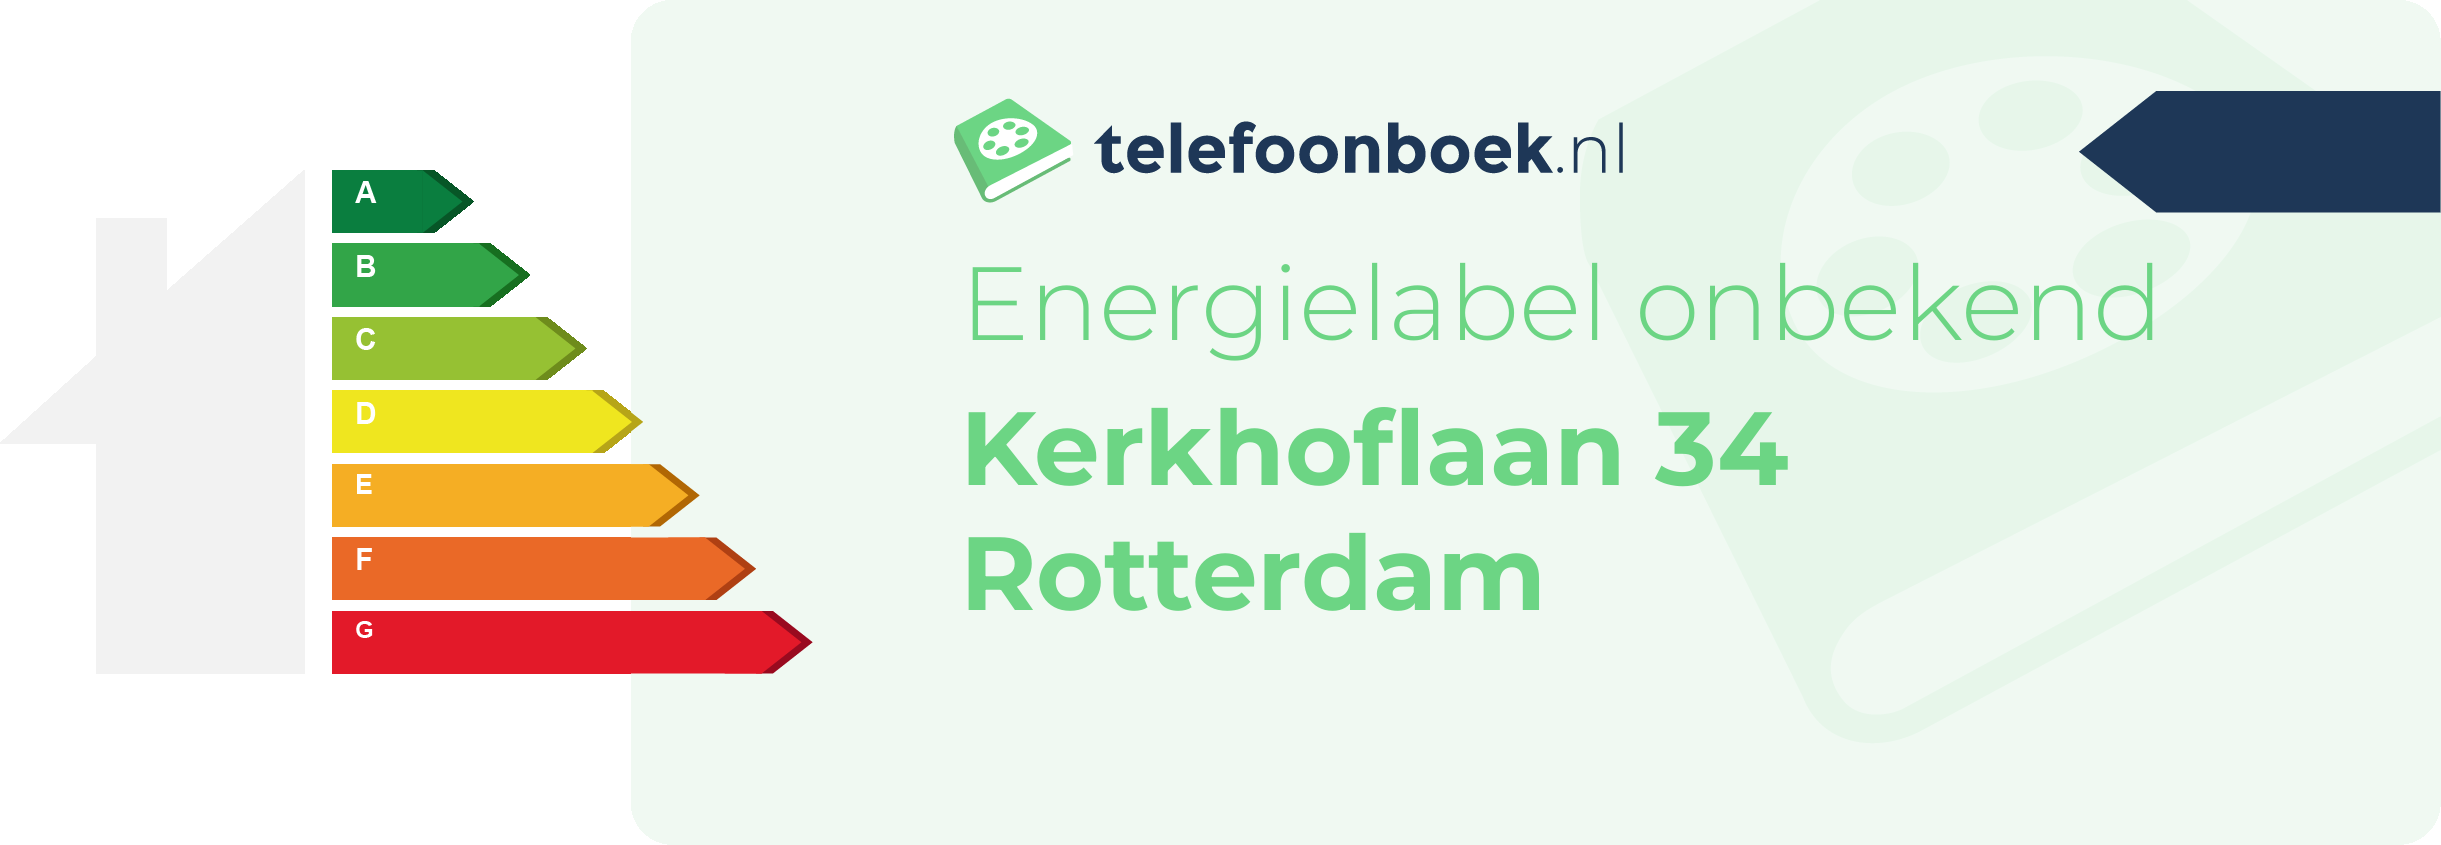 Energielabel Kerkhoflaan 34 Rotterdam